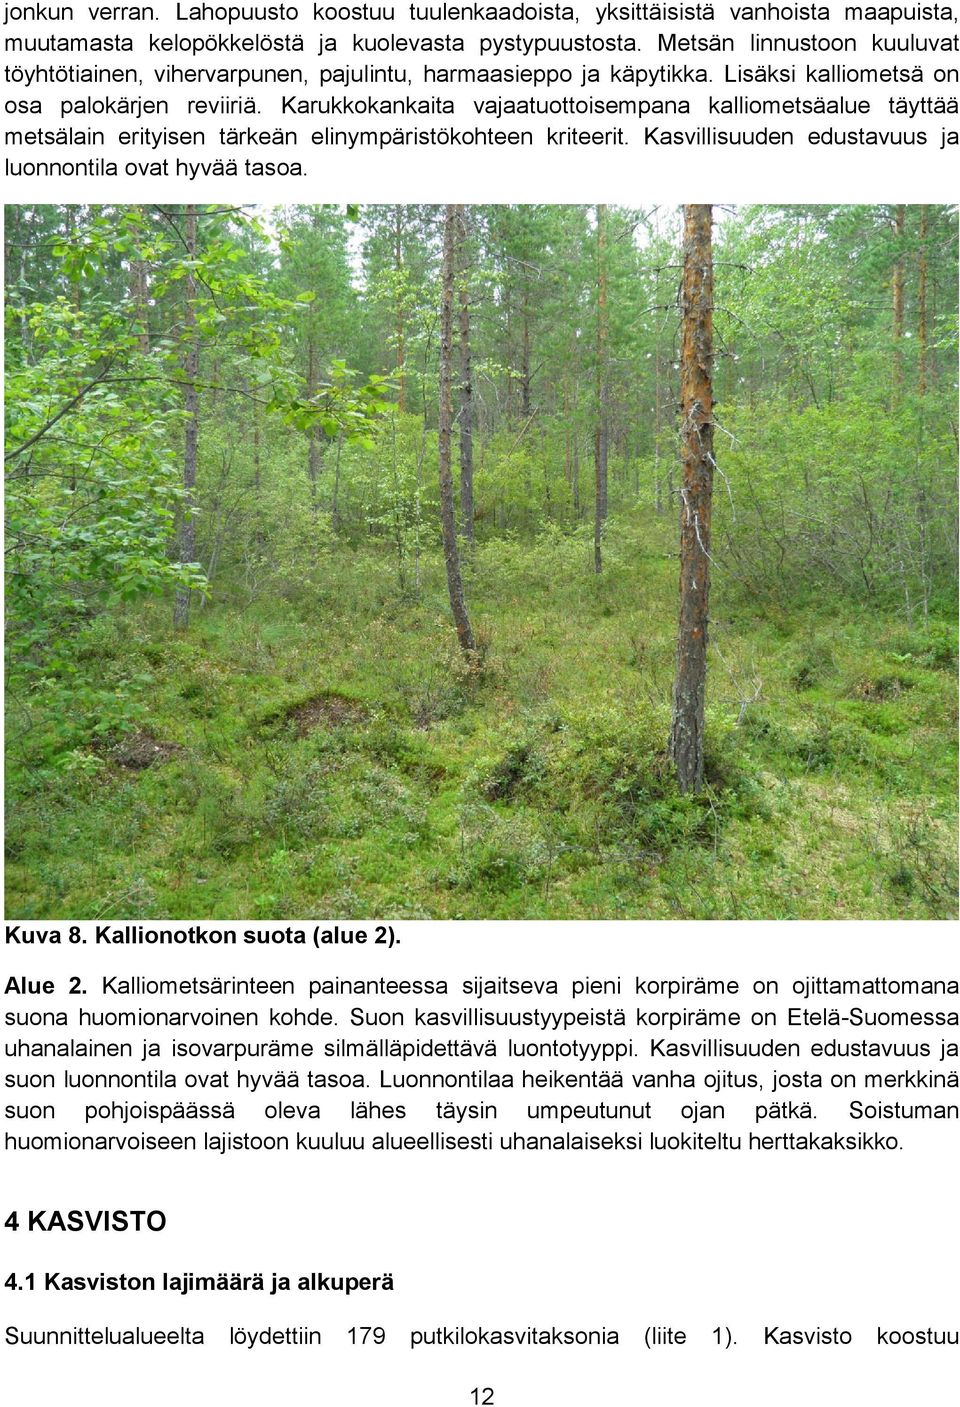 Karukkokankaita vajaatuottoisempana kalliometsäalue täyttää metsälain erityisen tärkeän elinympäristökohteen kriteerit. Kasvillisuuden edustavuus ja luonnontila ovat hyvää tasoa. Kuva 8.